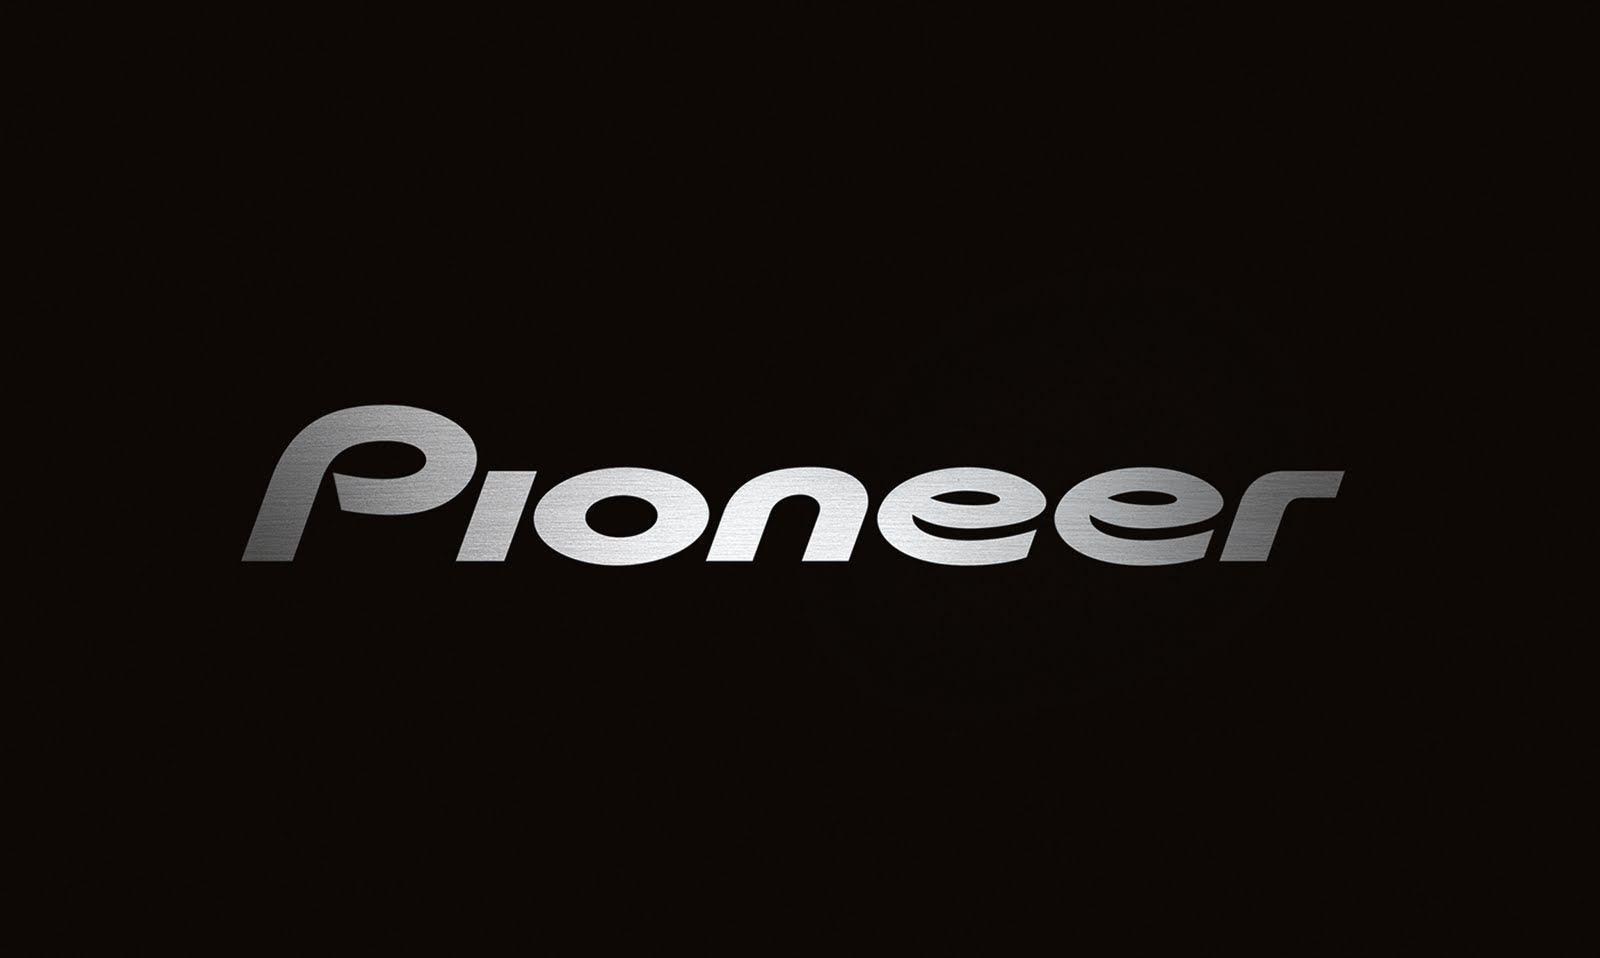 Pioneer Logo HD Wallpaper Widescreen. Mi futura coleccion